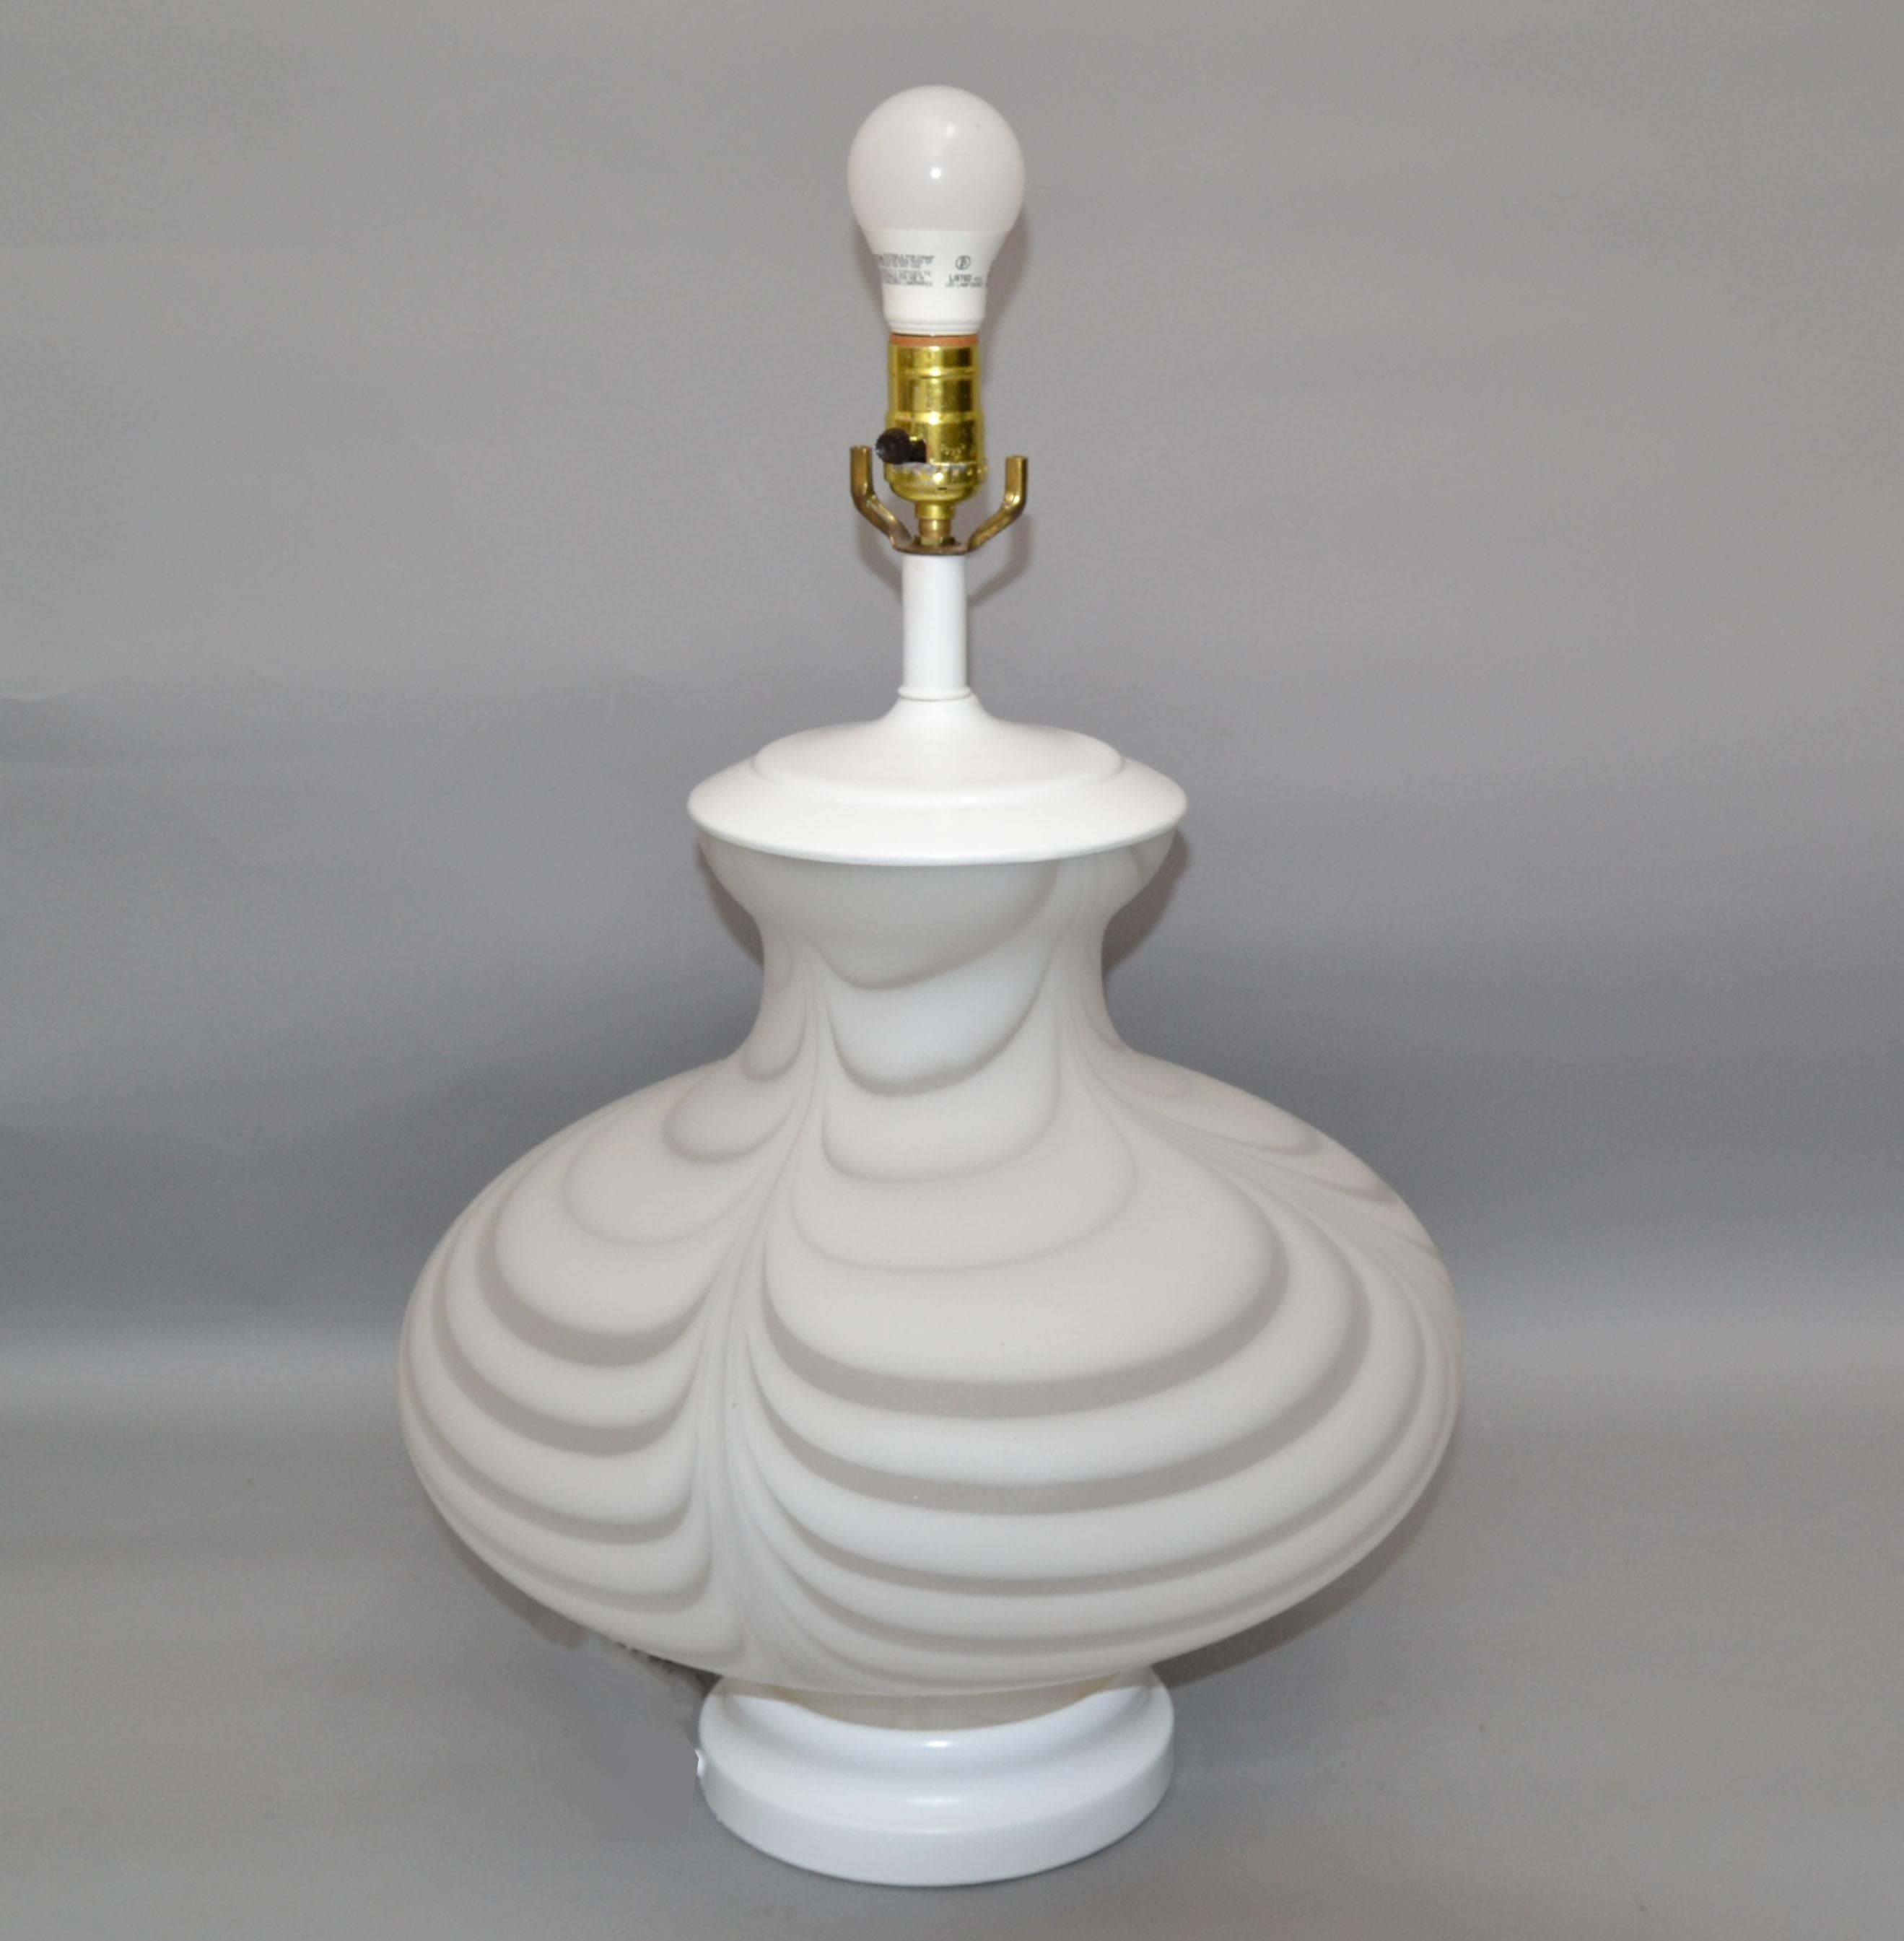 Atemberaubende italienische Tischlampe im Stil von Mazzega. Hergestellt, um 1970 in gesprenkeltem, wirbeltem weißem Muranoglas mit weißer Glanzoberfläche und Sockel.
Verdrahtet für die USA und für 2 normale oder LED-Glühbirnen geeignet.
Ein für